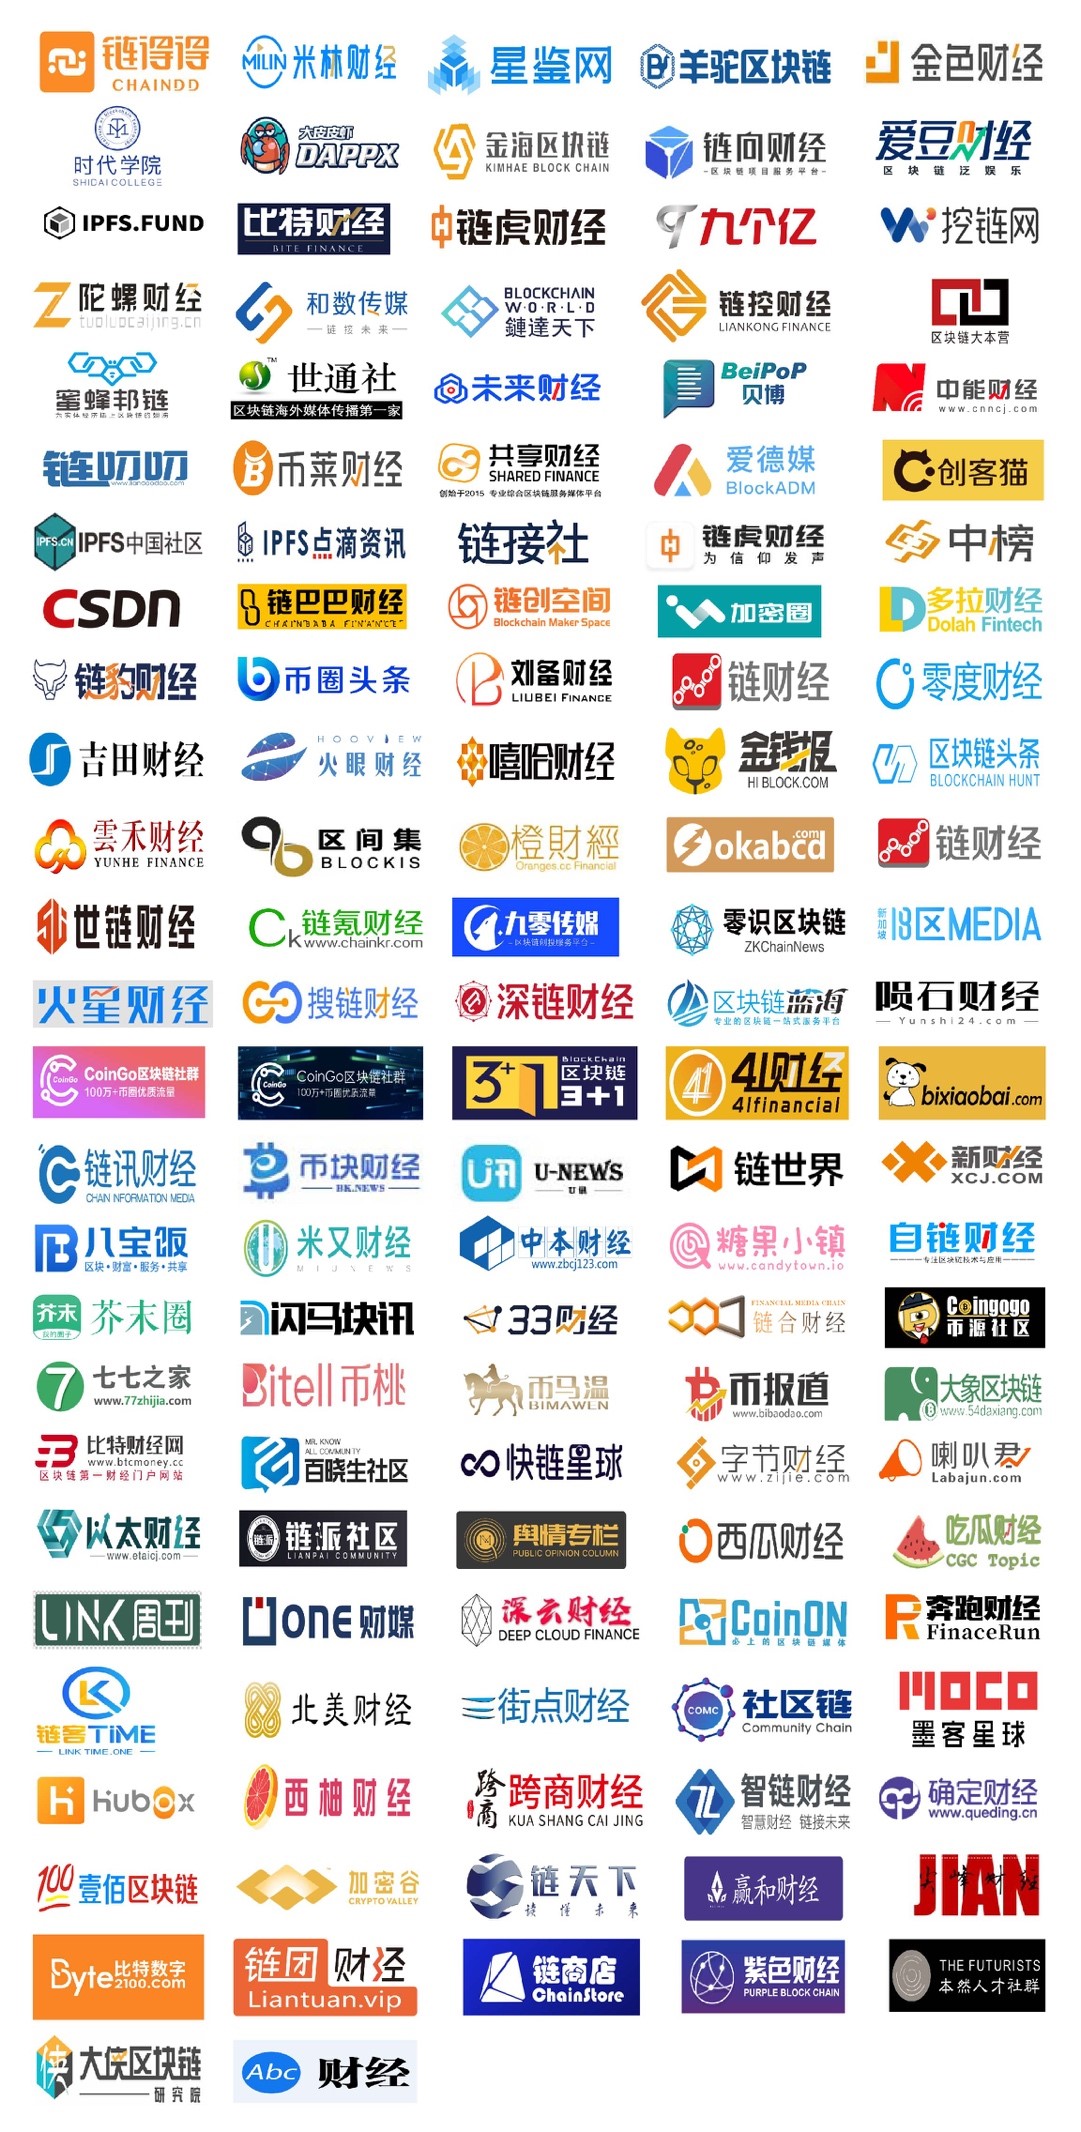 第二届深圳国际区块链技术与应用大会召开在即